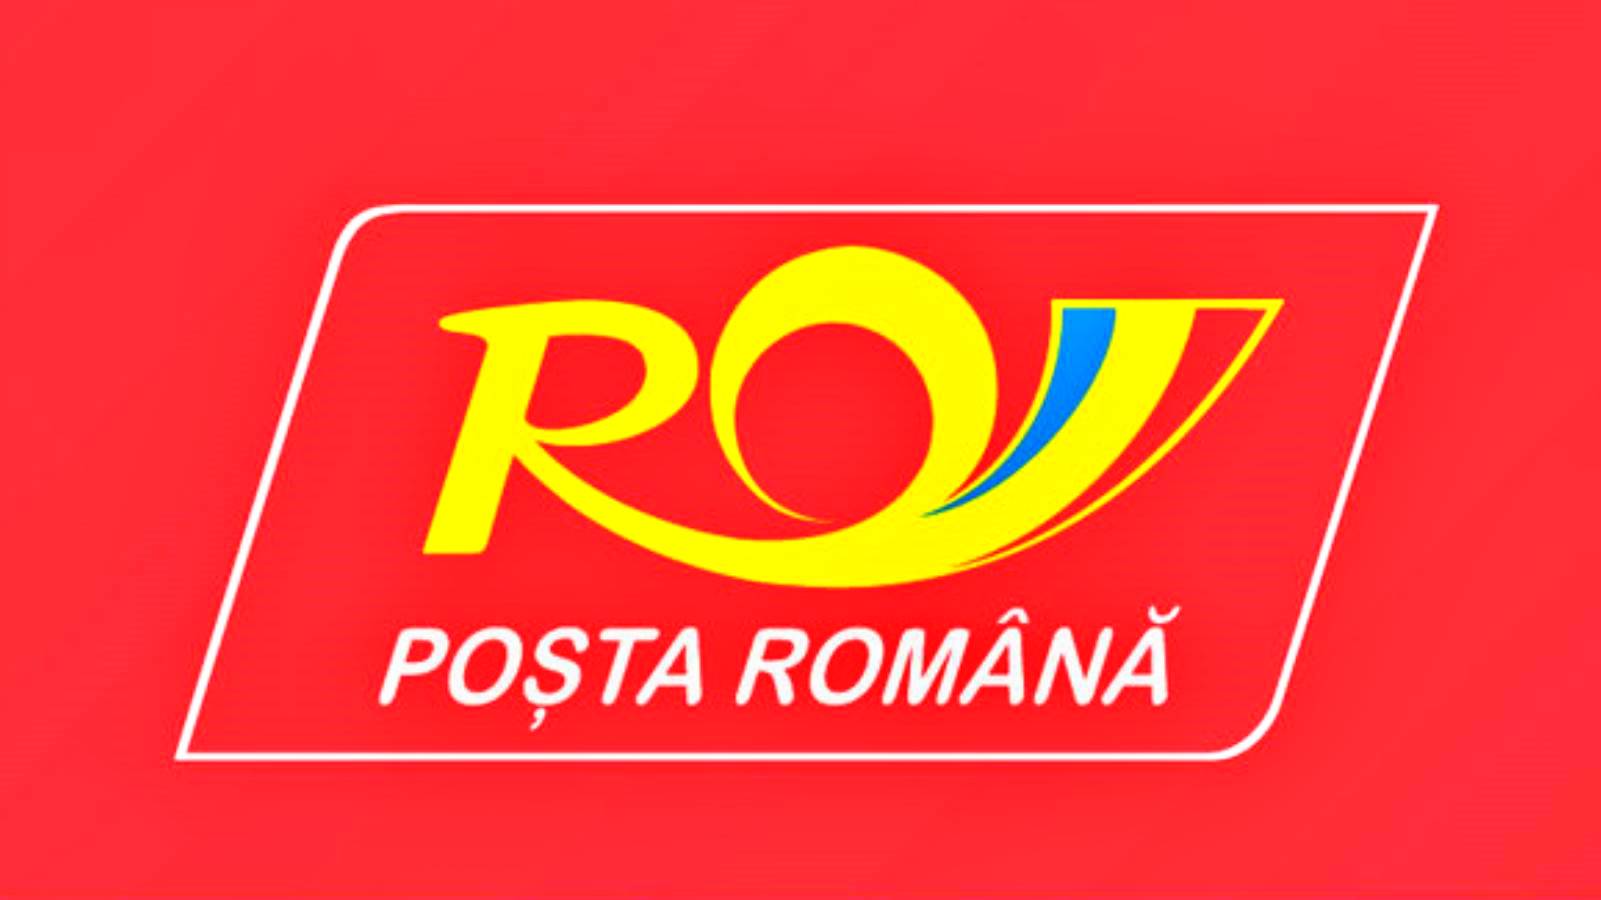 Rumänische Post Günstige Lieferung bestellte Produkte Intermediate OLX